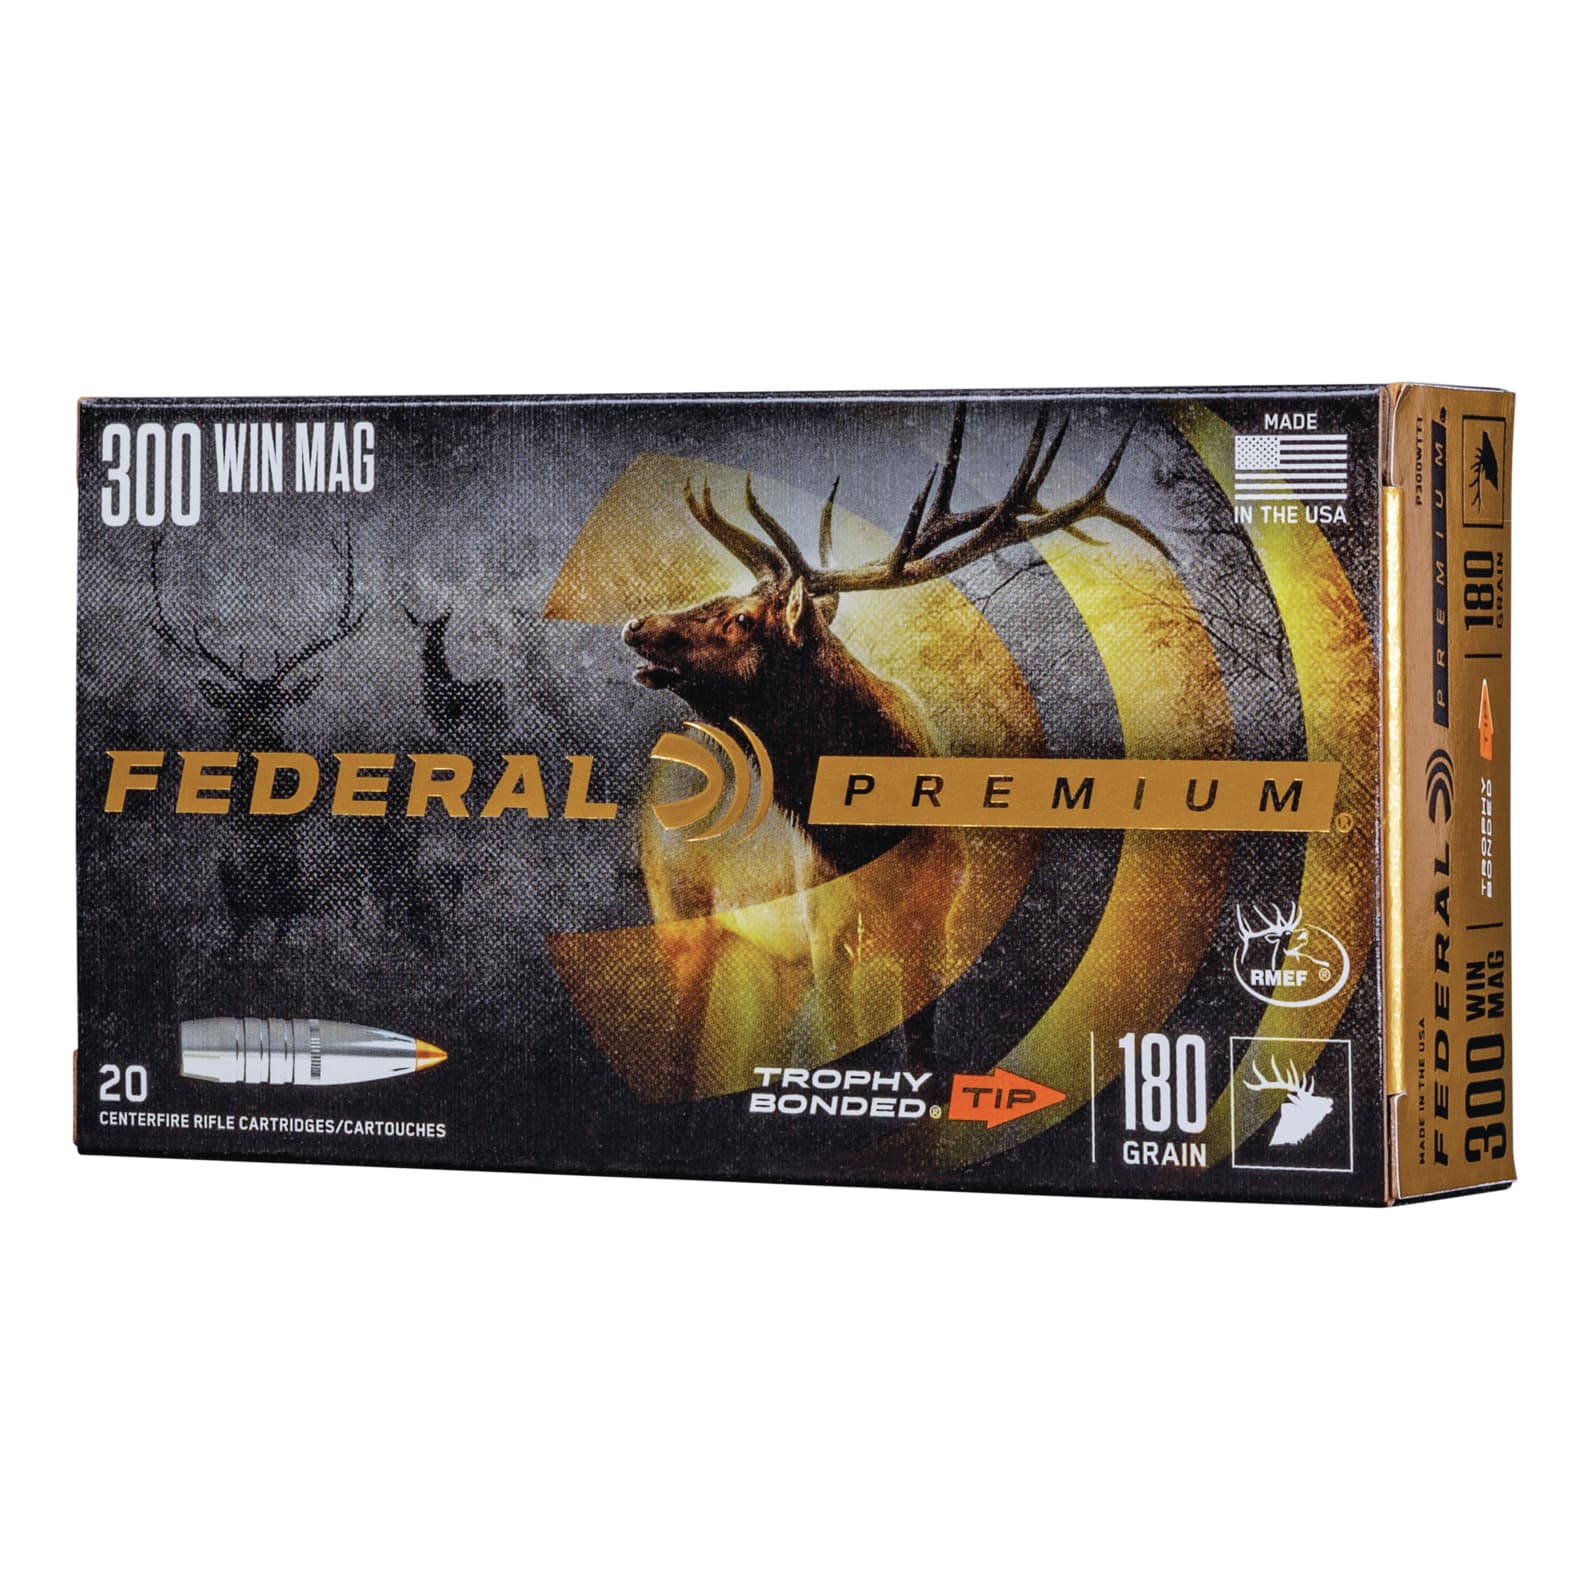 Federal Premium Vital Shok Ammunition - Trophy Bonded Tip